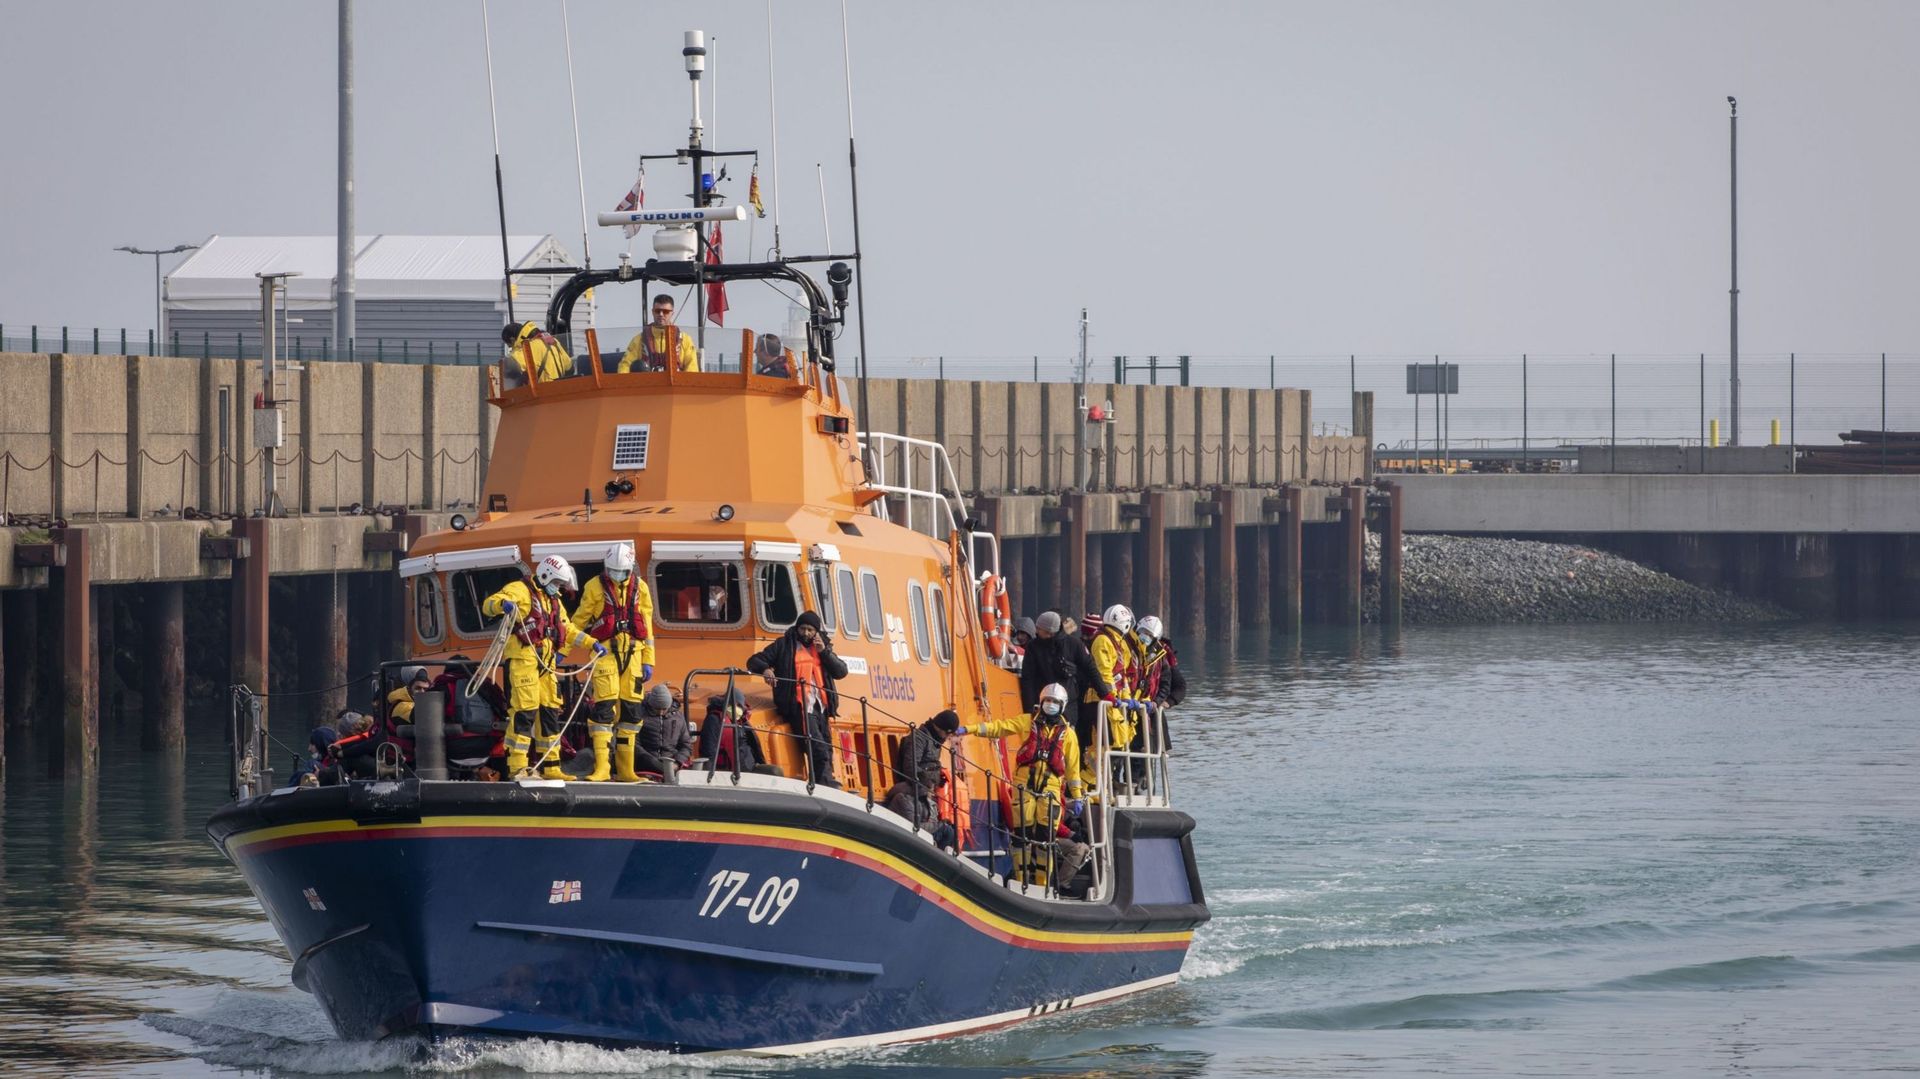 Des demandeurs d'asile arrivant sur les quais de Douvres à bord du bateau de la RNLI de Douvres après avoir été secourus dans la Manche lors de la traversée le 3 mars 2022 à Douvres, Kent, Royaume-Uni. 
